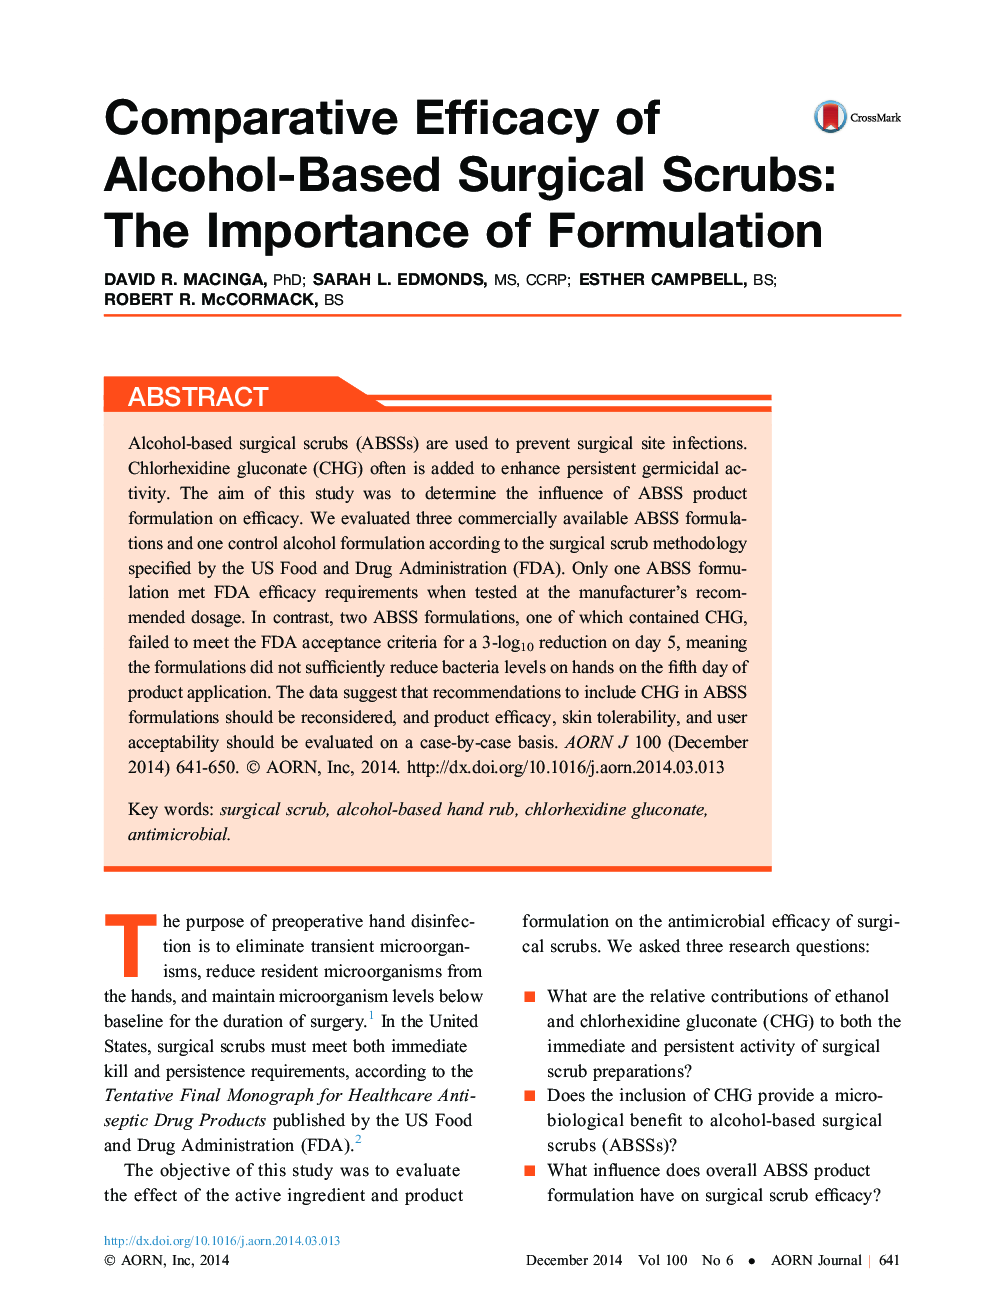 اثربخشی مقایسهای اسکراب جراحی مبتنی بر الکل: اهمیت فرمولاسیون 